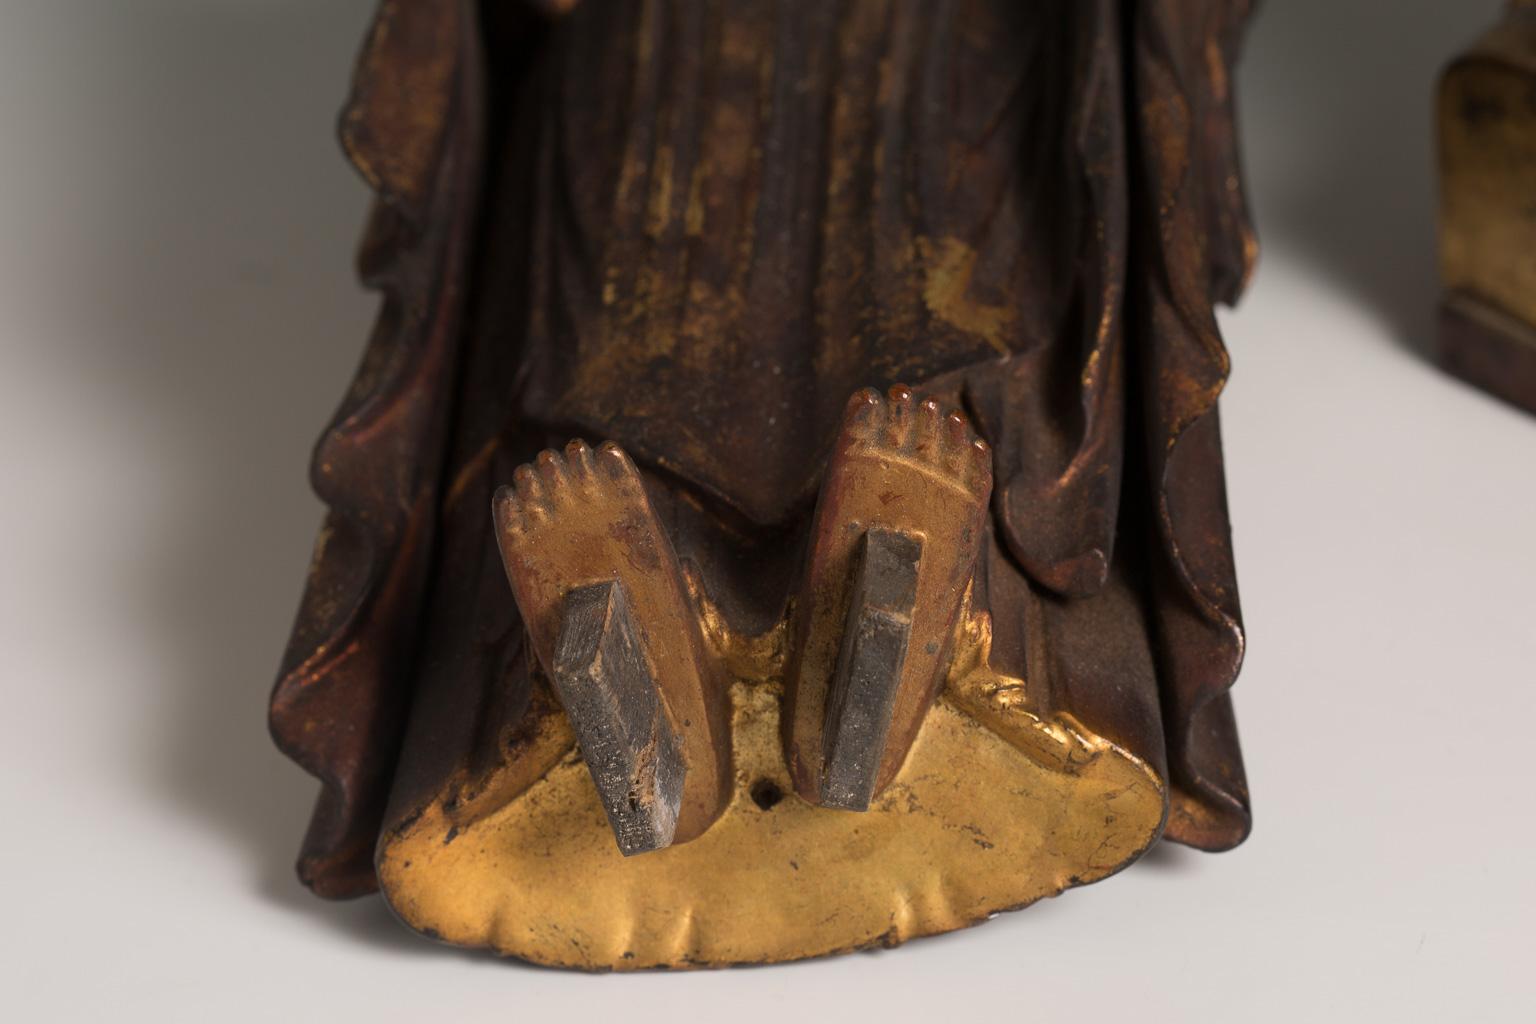 Der Amitabha (Amida auf Japanisch) Buddha wird stehend dargestellt, wobei seine Hände die Amida raigo-in Mudra bilden. Das Gesicht hat einen heiteren Ausdruck, mit geschlossenen Augen unter zart gewölbten Brauen und einem ernsten Gesicht. Das Haar